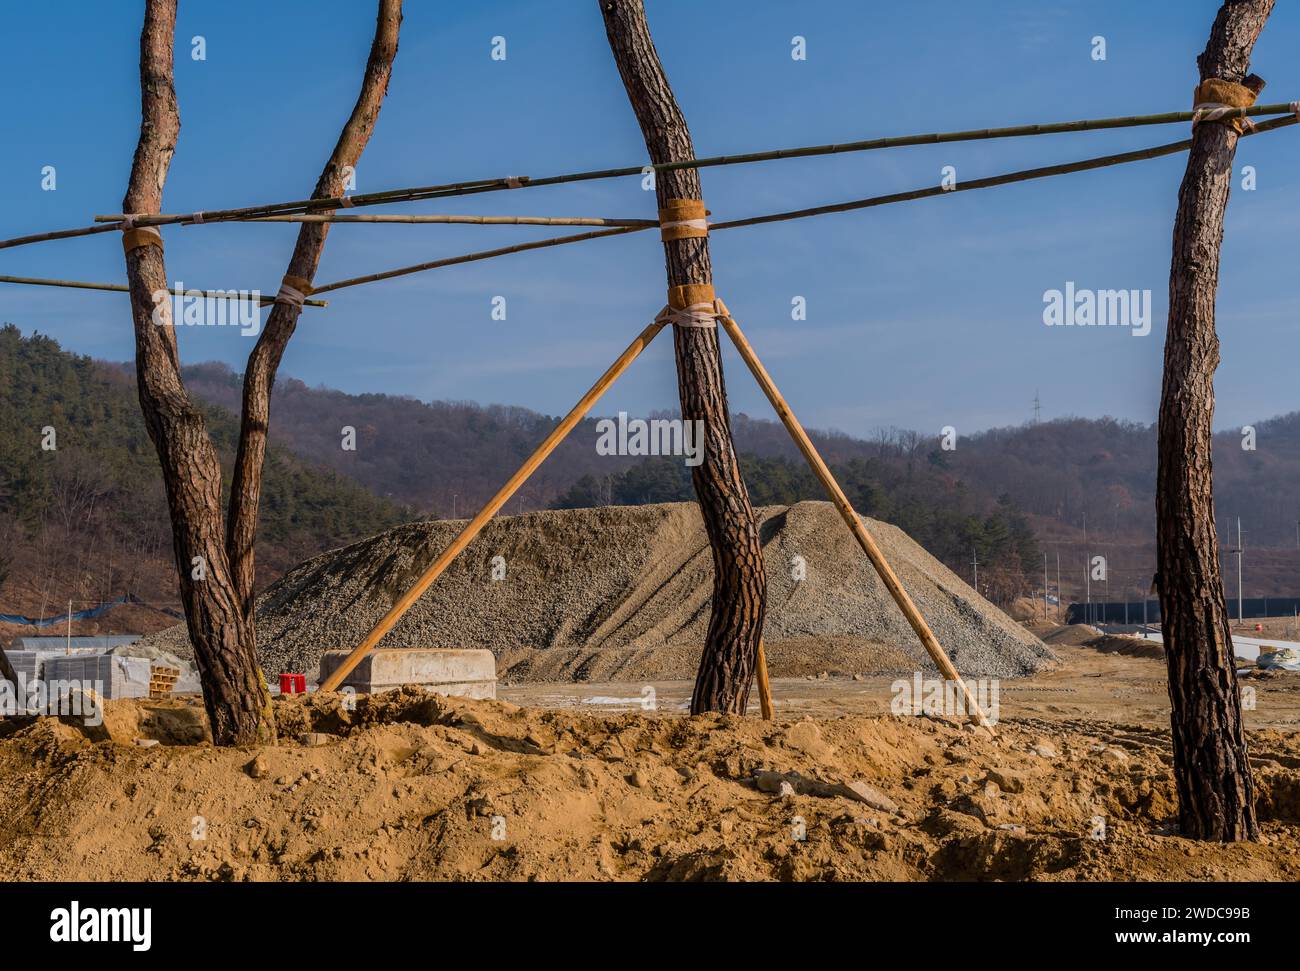 Alberi appena piantati supportati da strutture in legno in cantiere, Corea del Sud, Corea del Sud Foto Stock